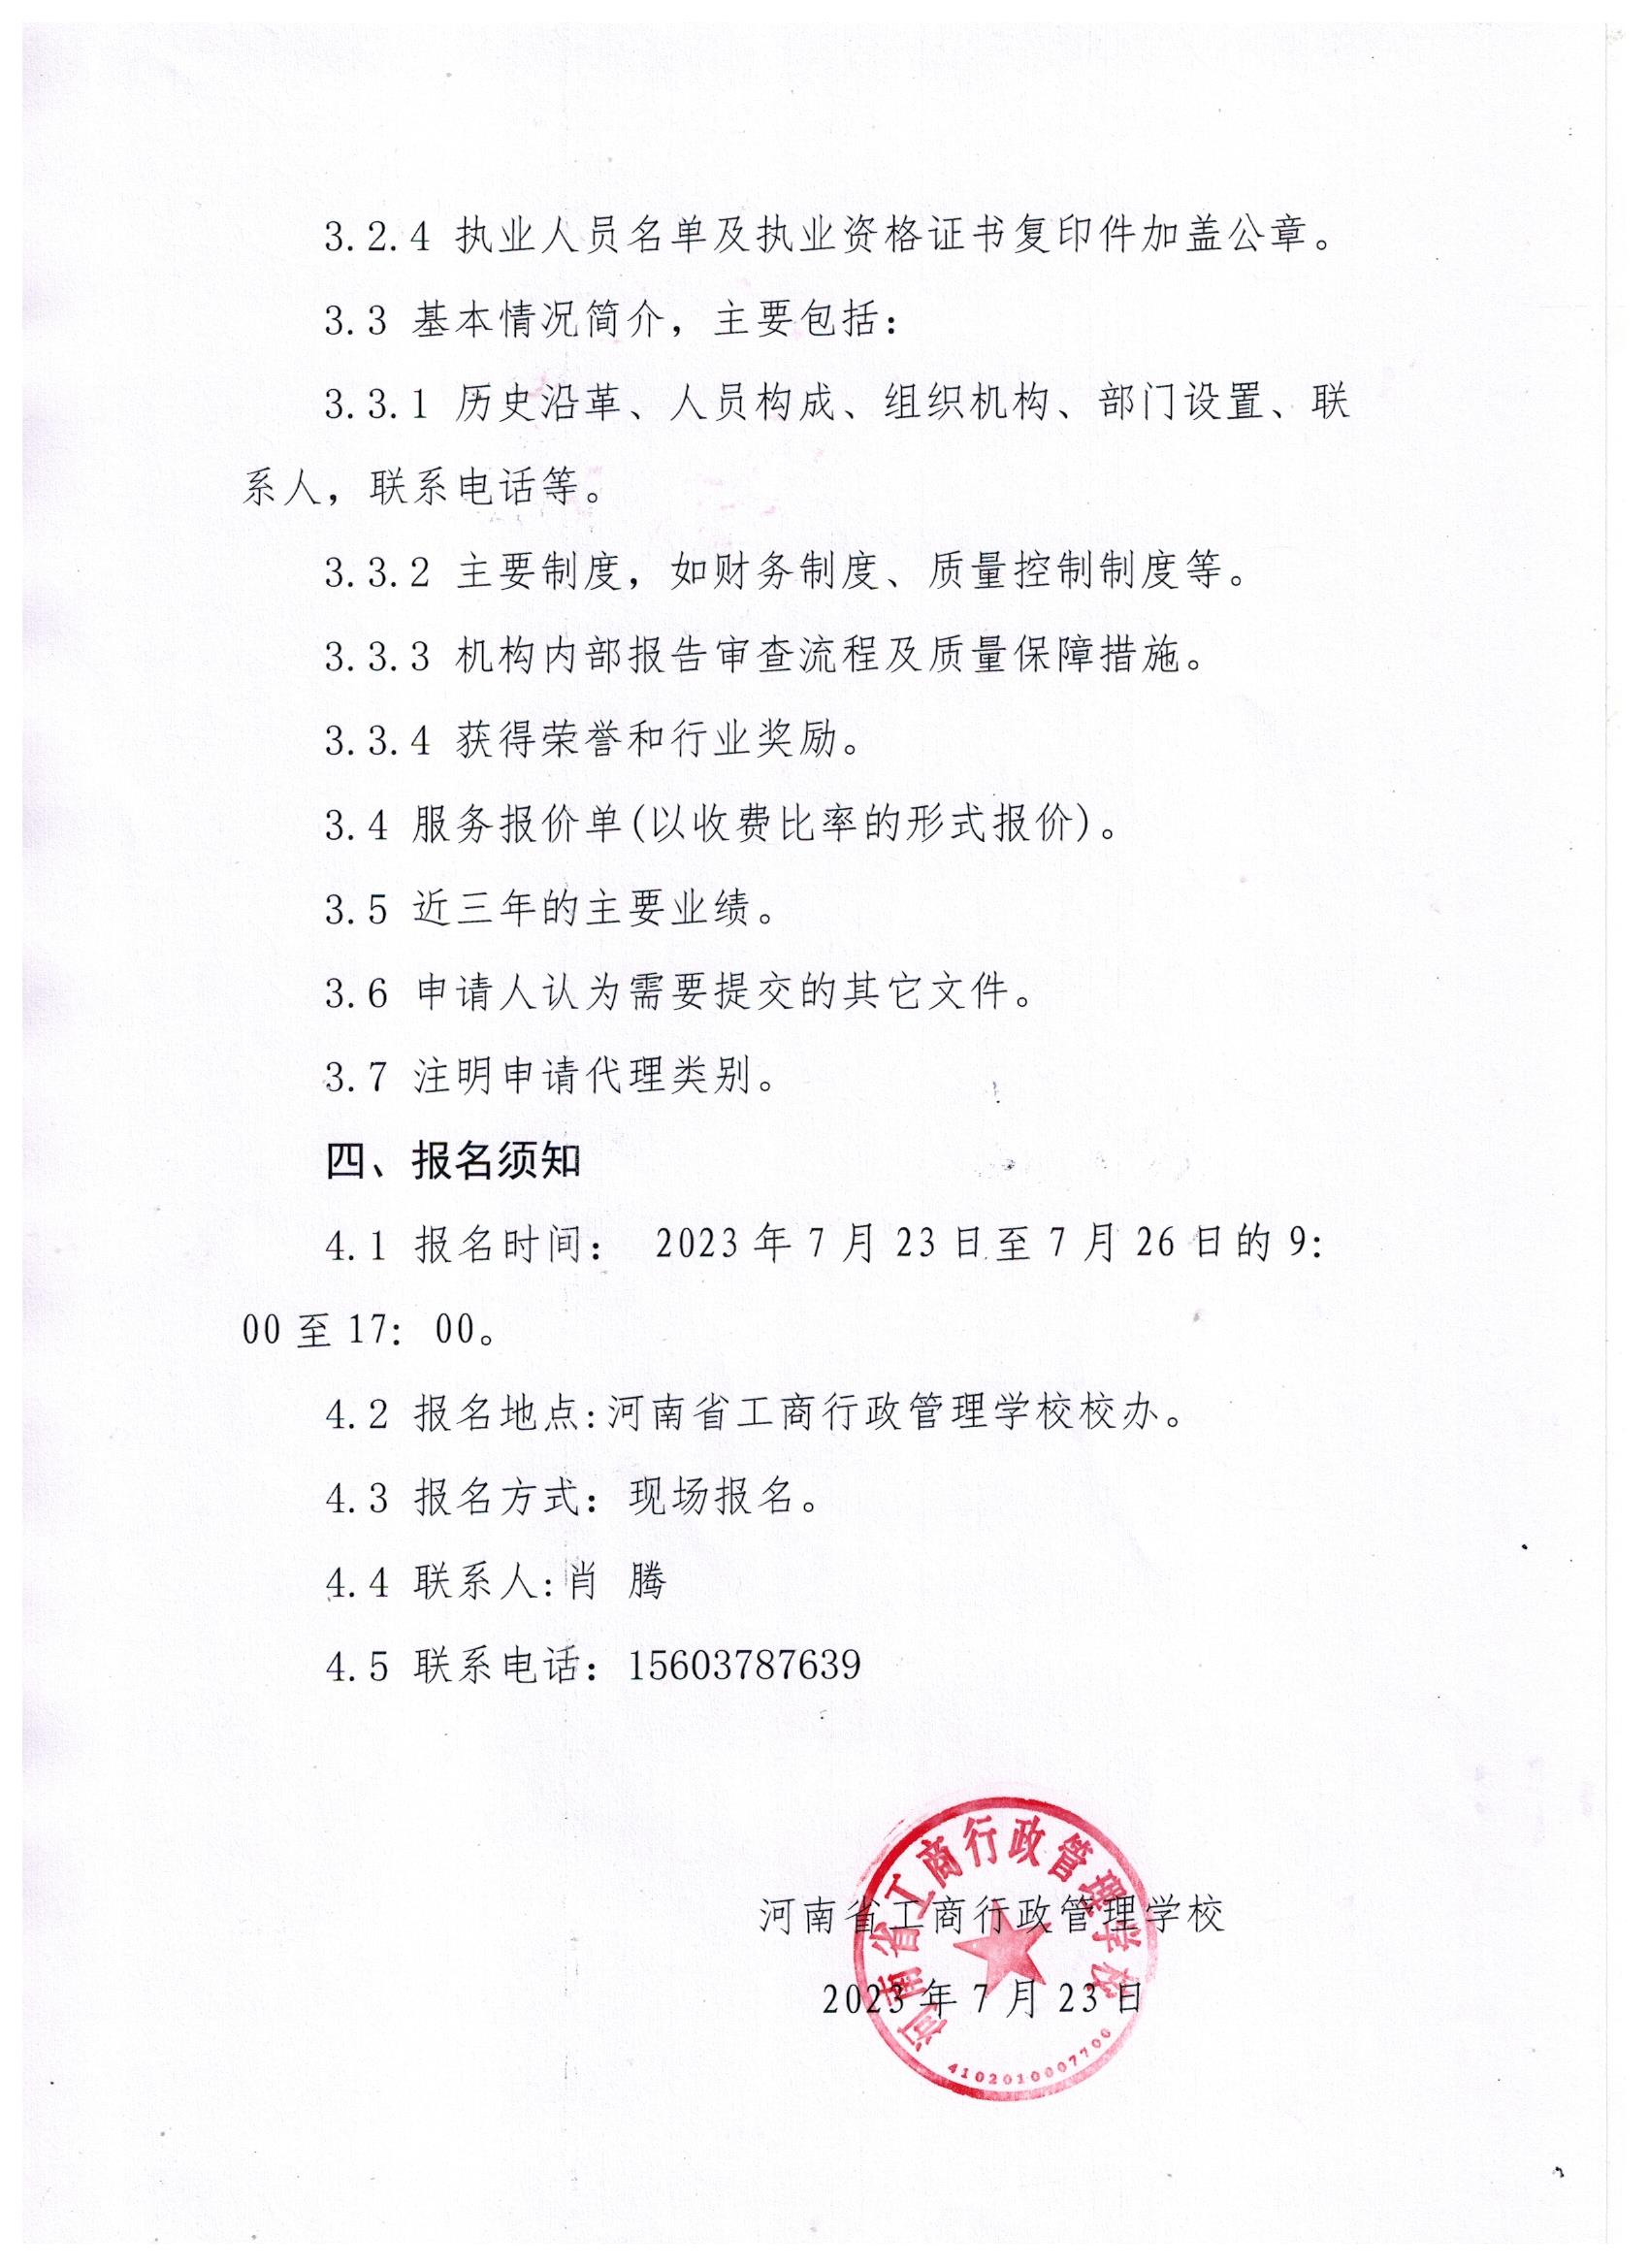 河南省工商行政管理学校比选招标代理机构的公告